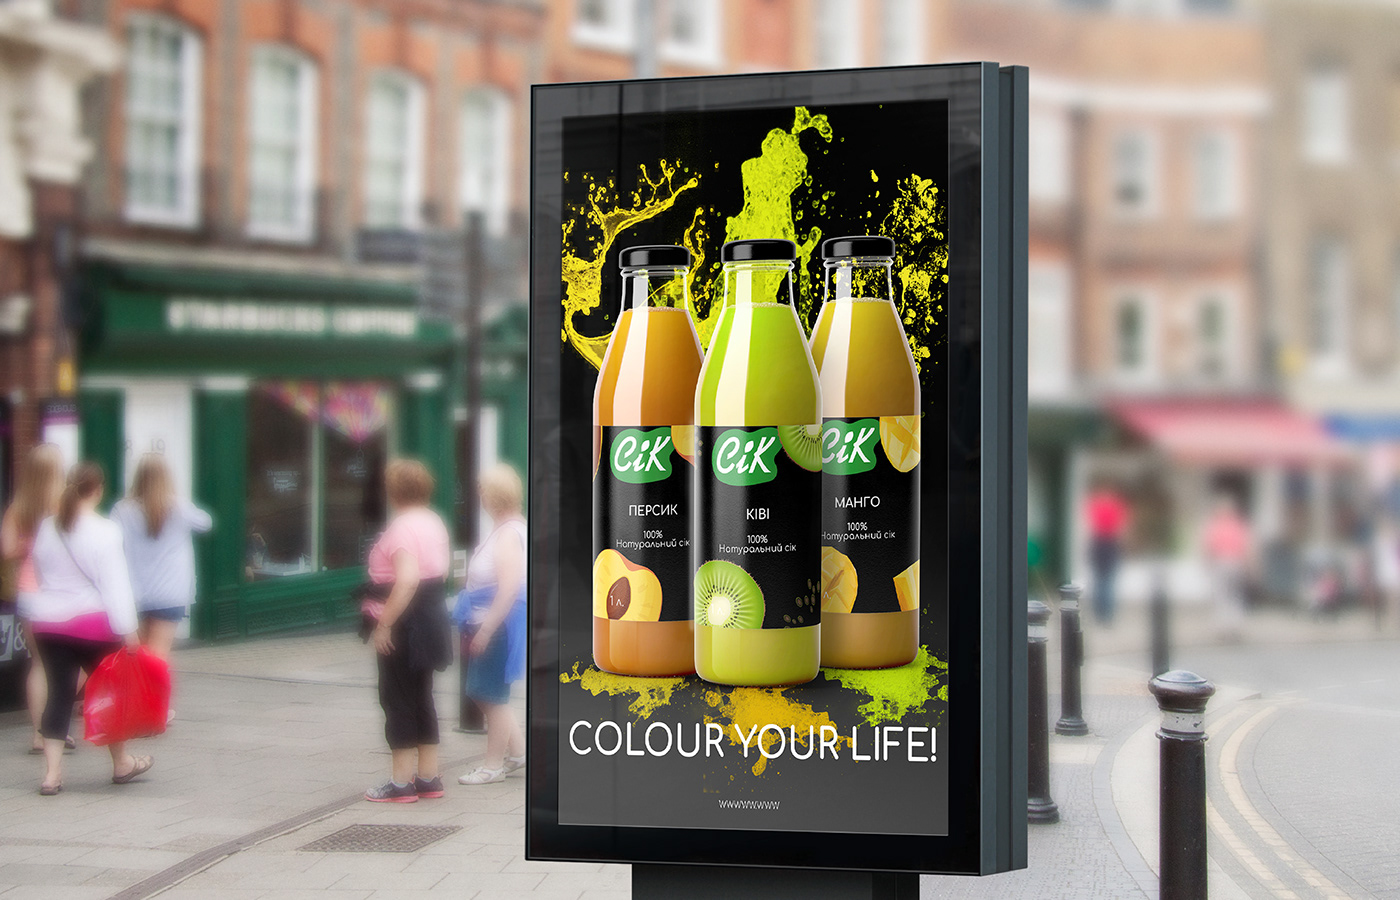 Packaging Graphic Designer packaging design Juice Packaging juice fruit juice bottle drink label design Lable